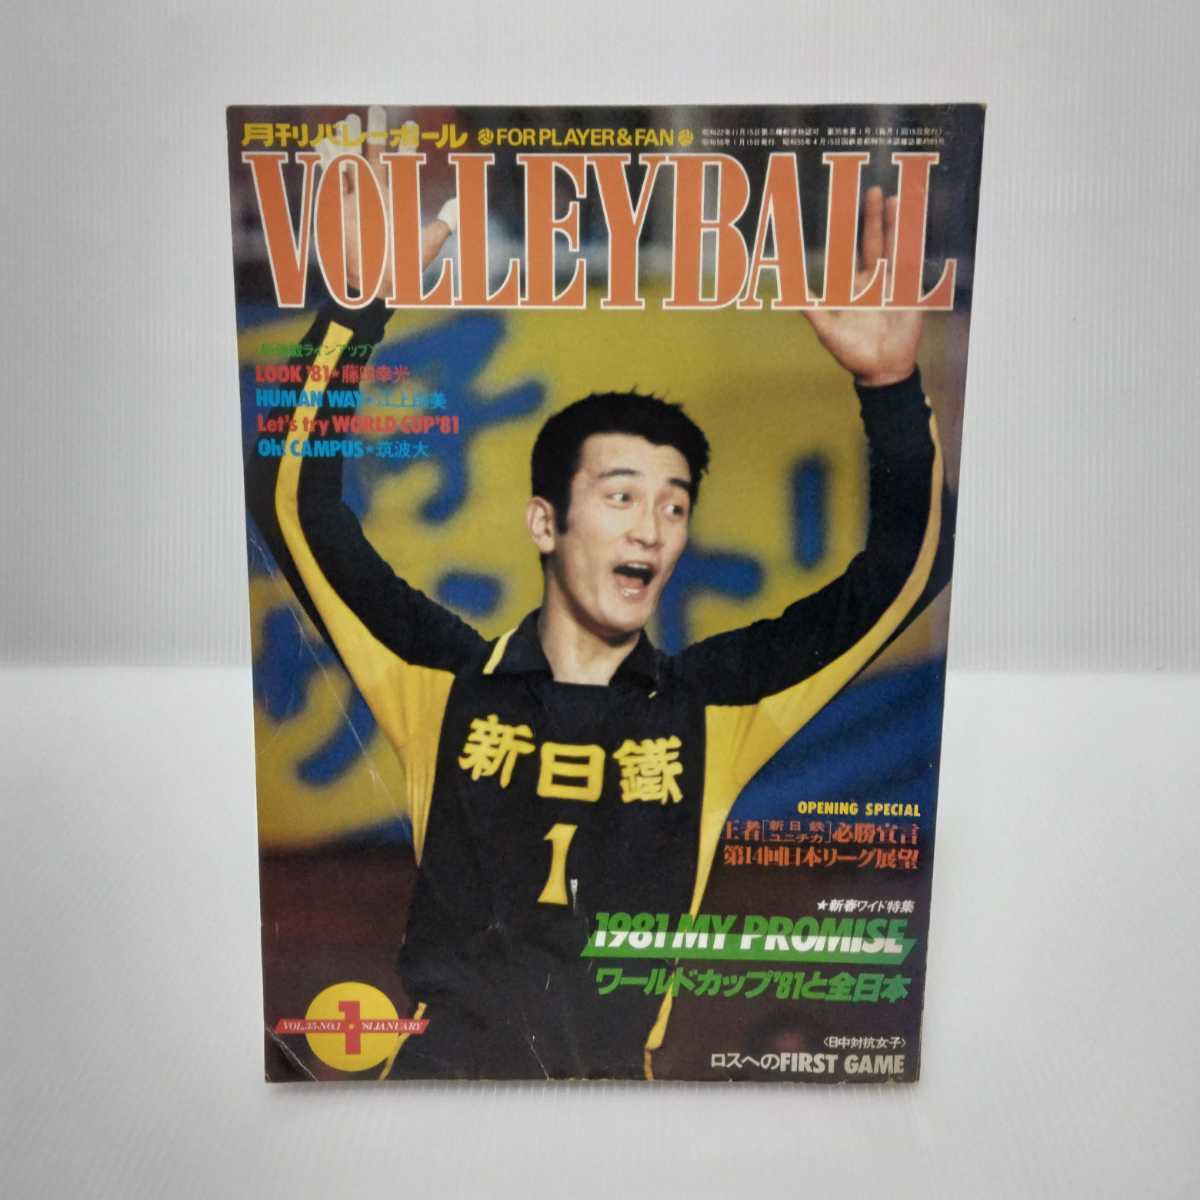  ежемесячный волейбол 1981.1 новый год специальный выпуск 1981MY PROMISE World Cup *81. все Япония 